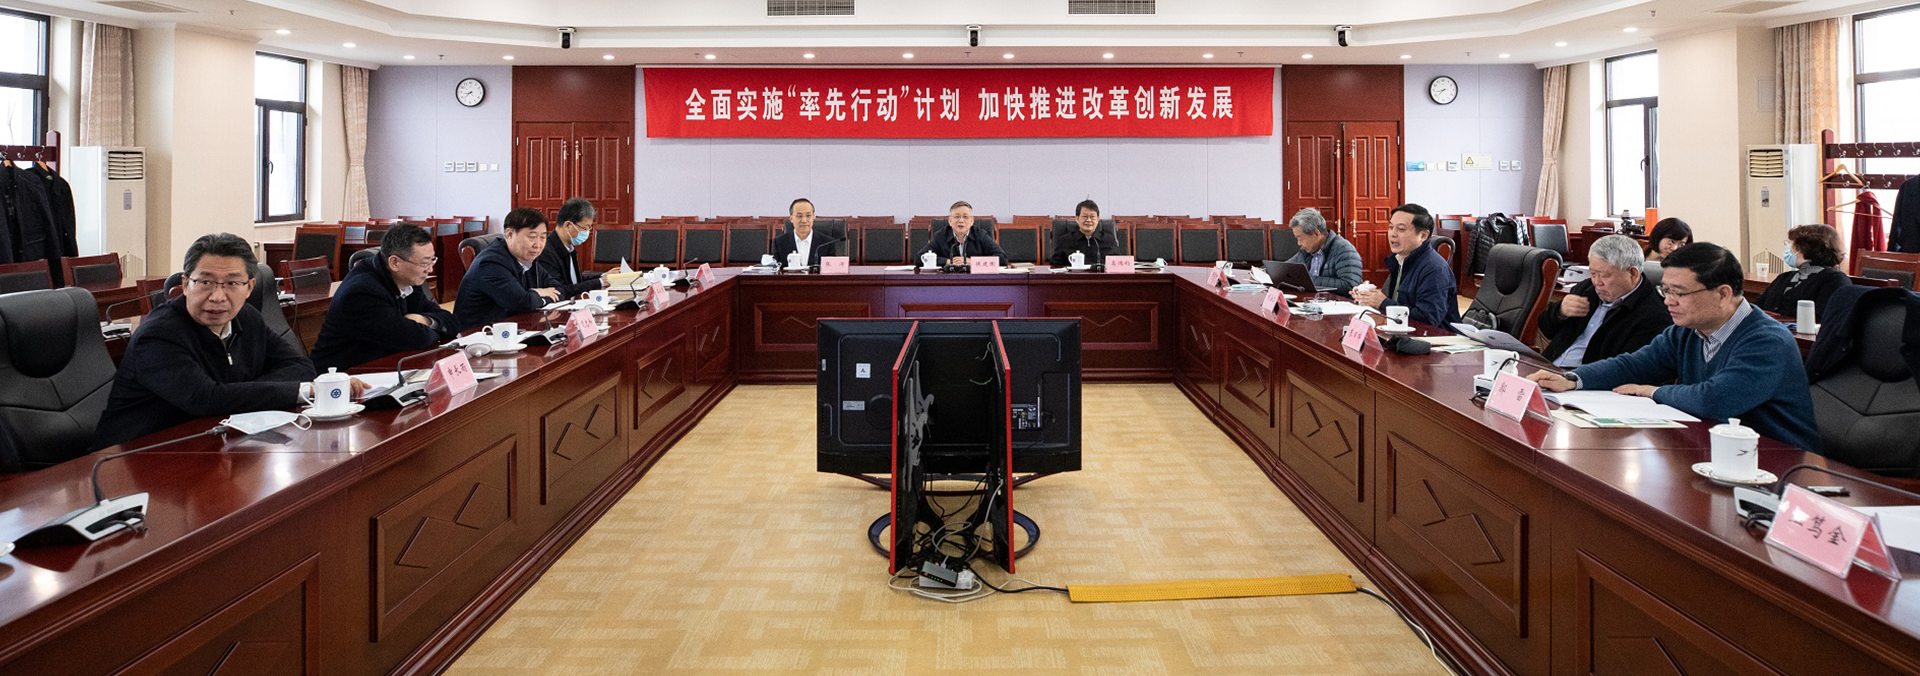 第九届中国科学院学部主席团第五次会议在北京召开